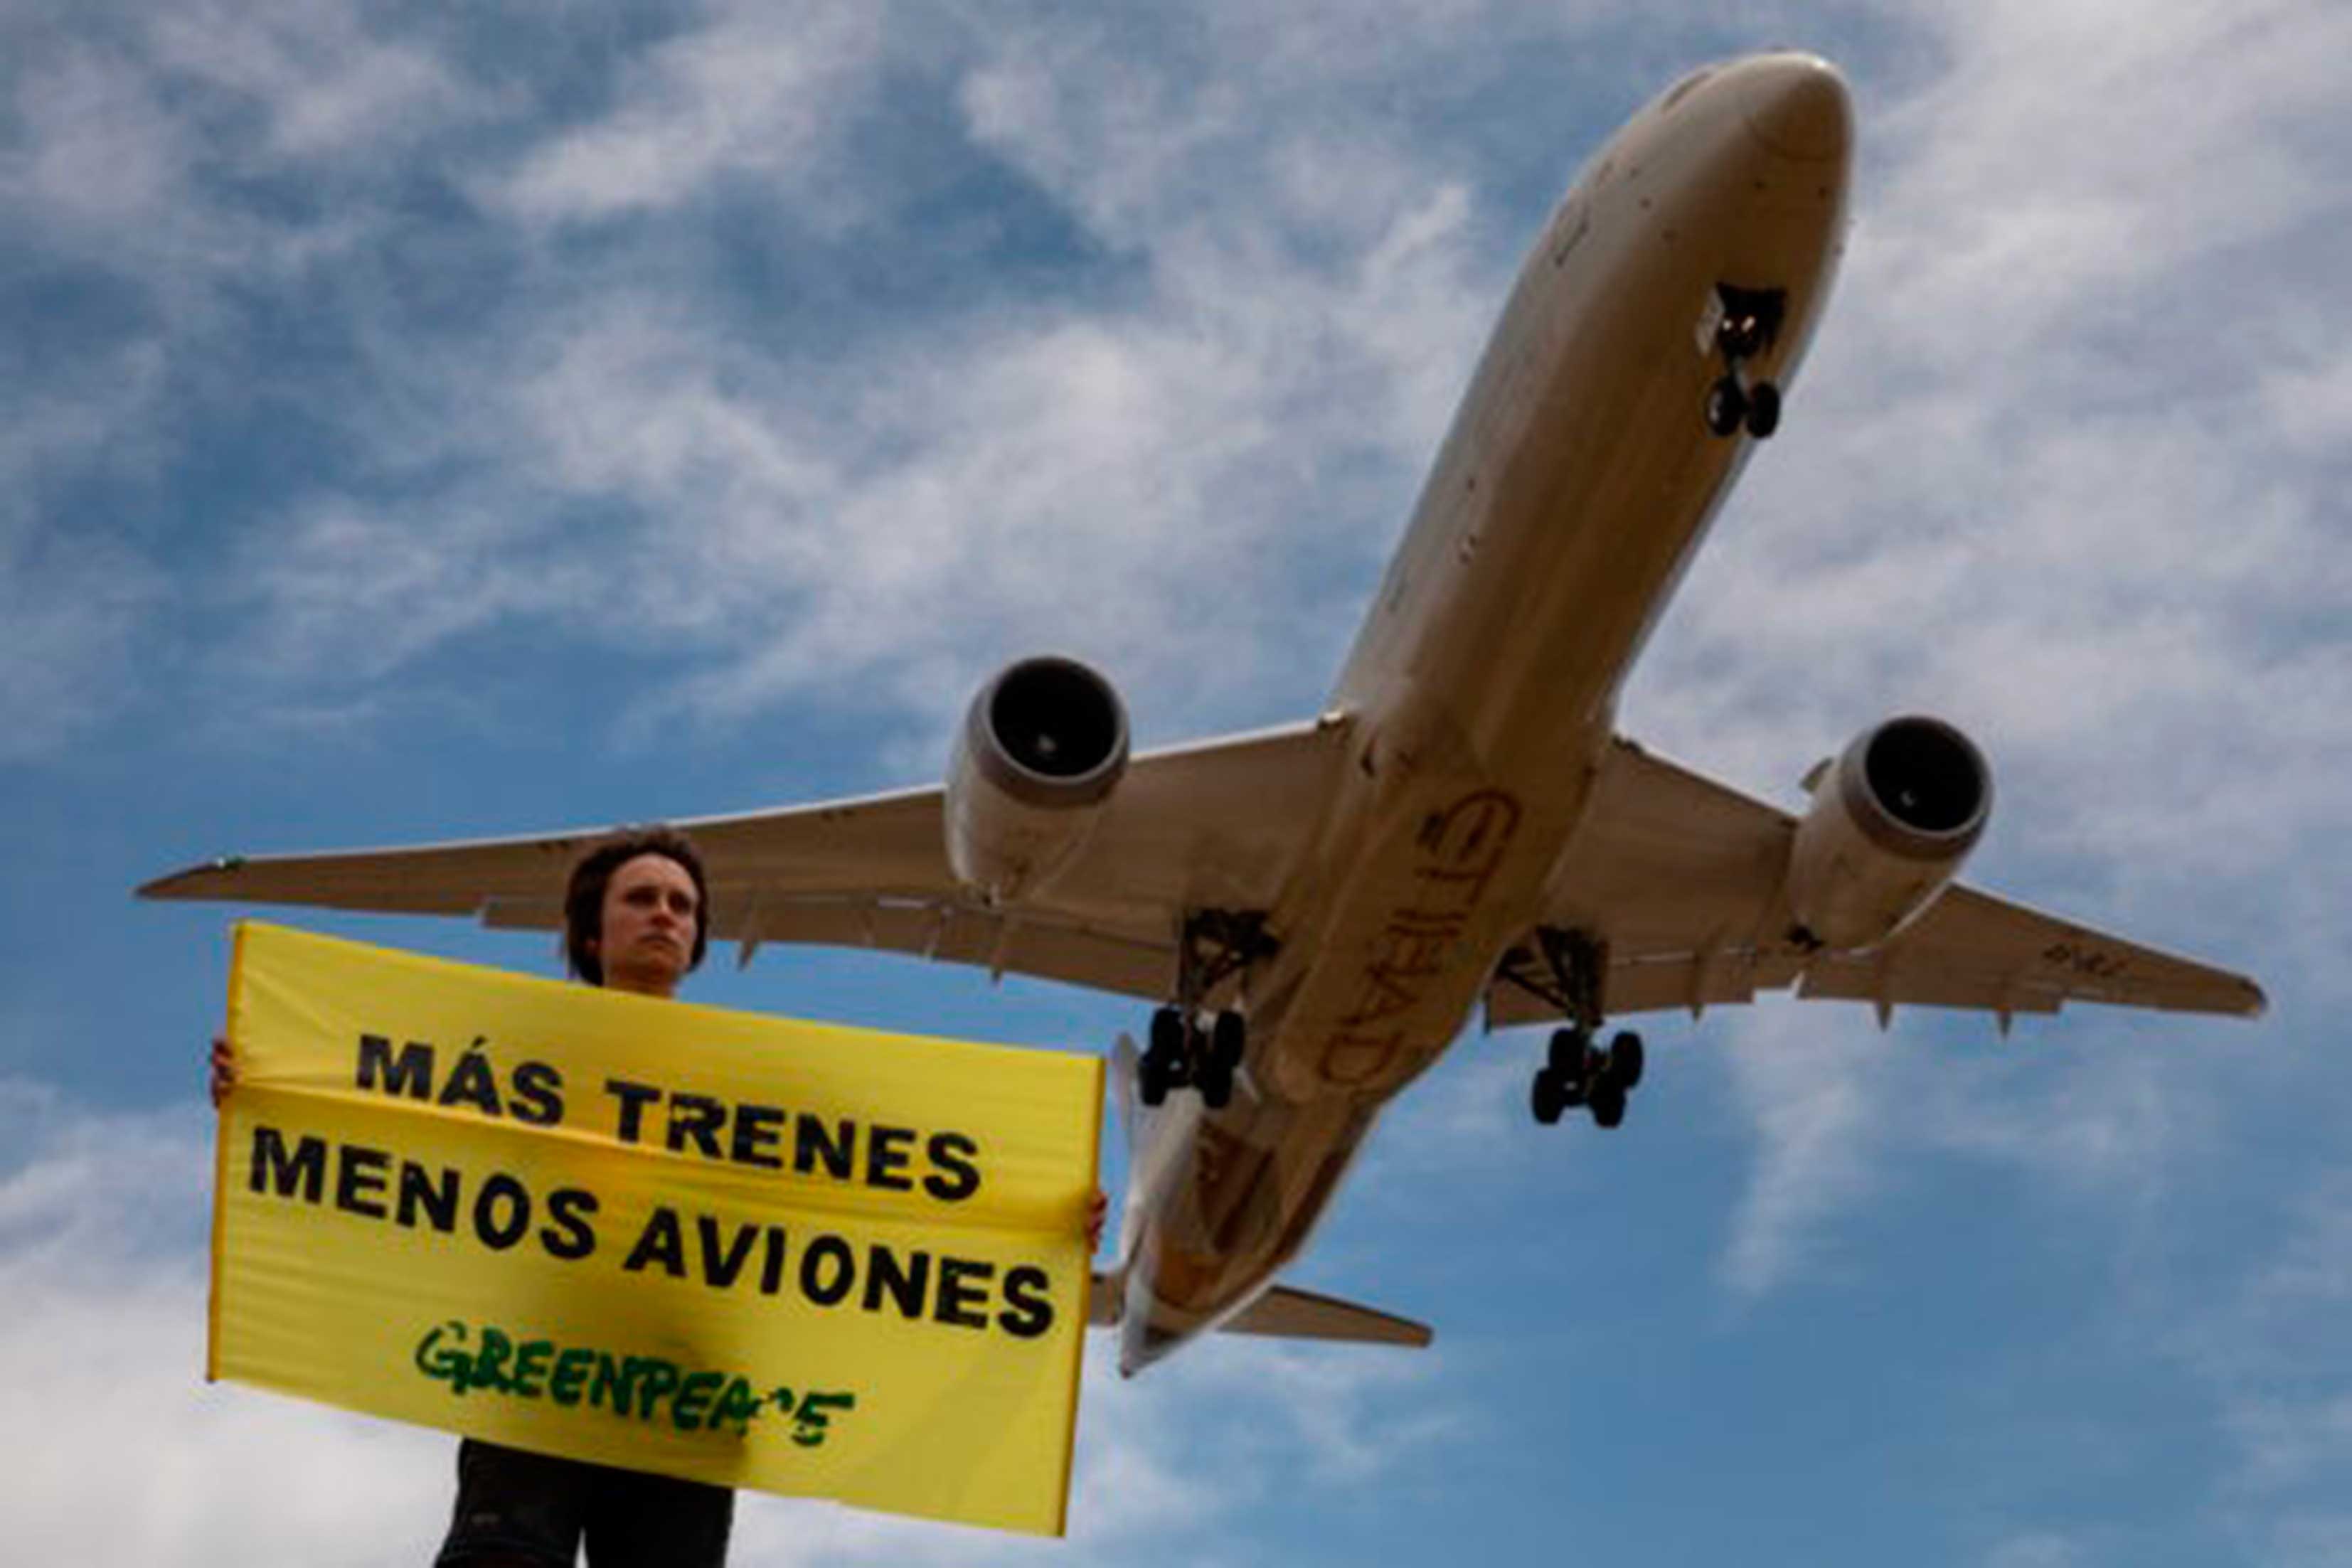 Greenpeace denuncia "chanchullos" en las subvenciones encubiertas a vuelos no rentables en plena emergencia climática